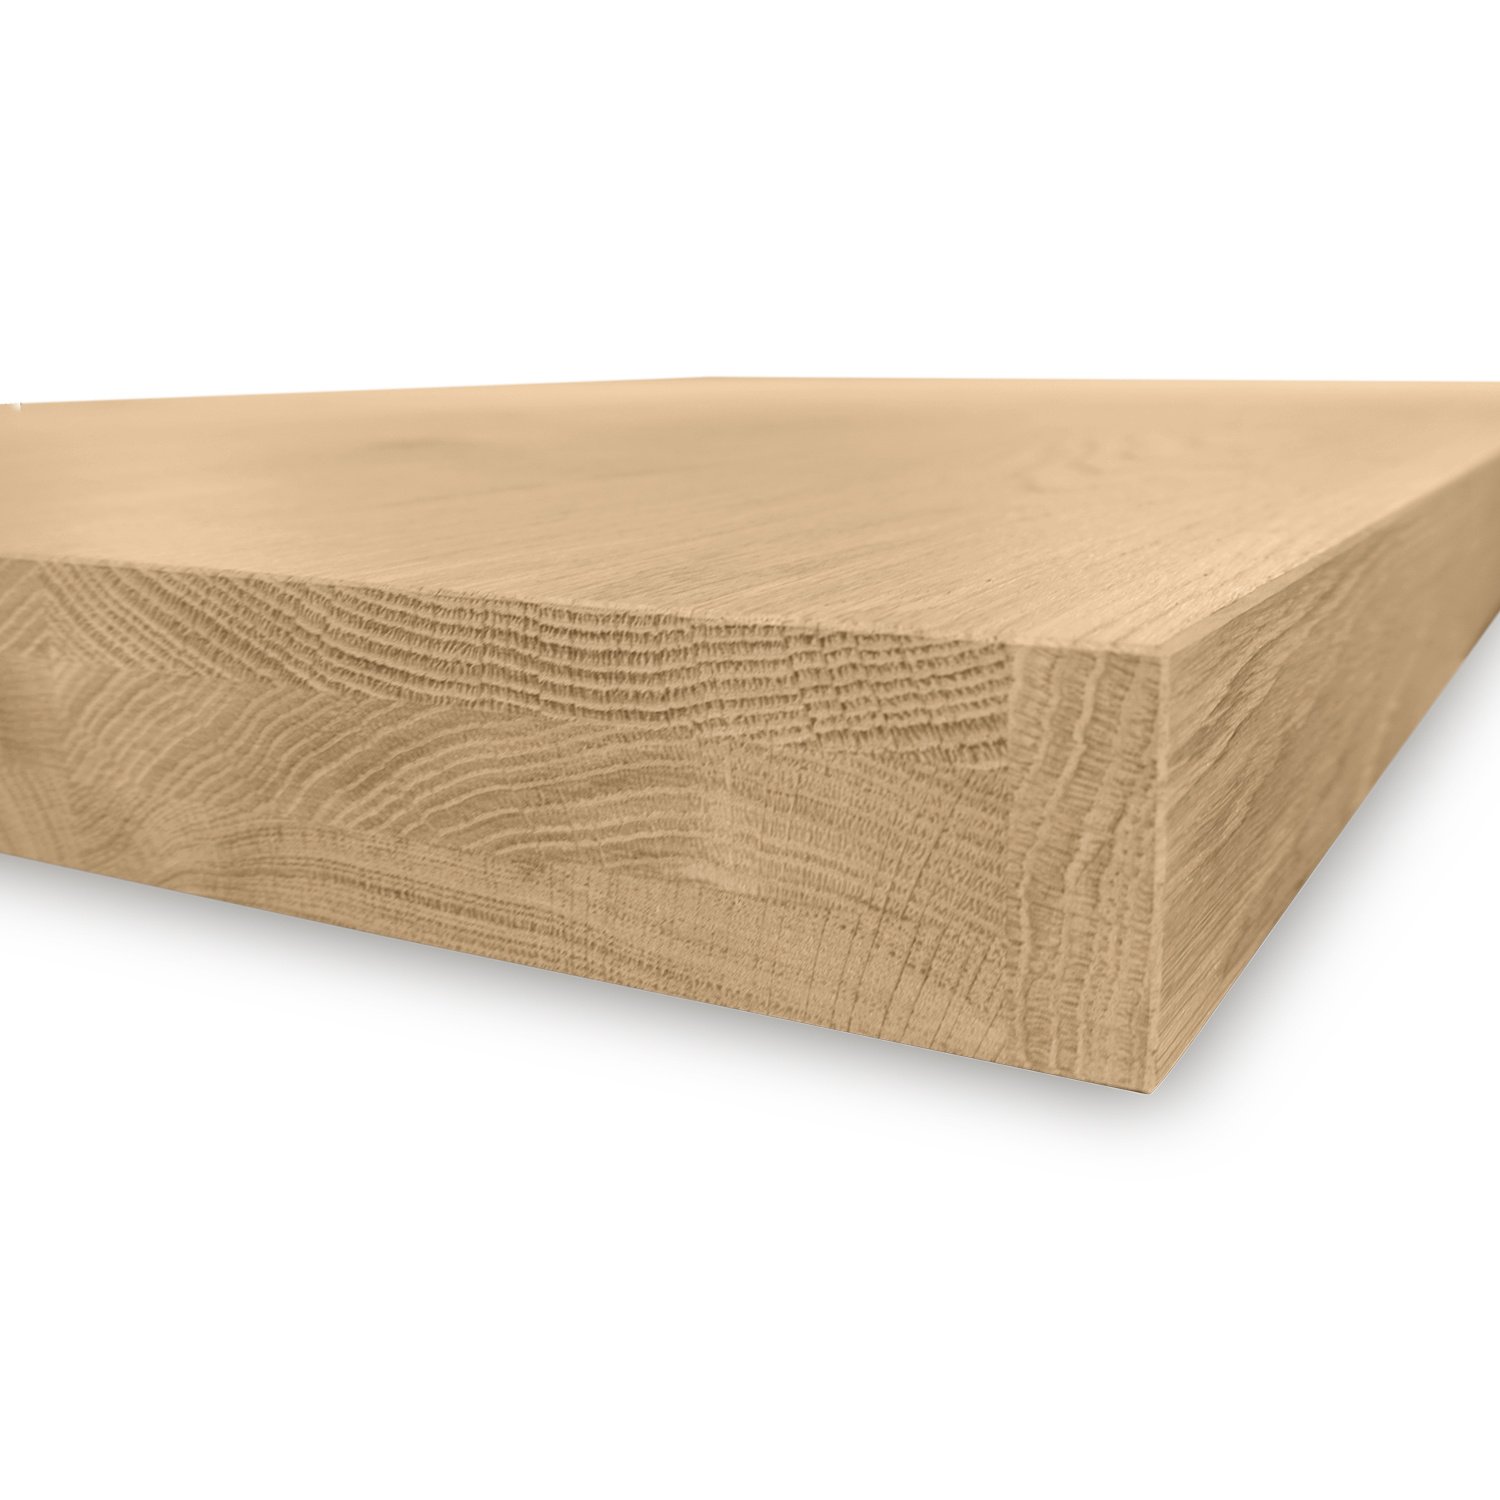  Tischplatte Eiche nach Maß - 6 cm dick (2-lagig) - Eichenholz A-Qualität - Eiche Tischplatte - verleimt & künstlich getrocknet (HF 8-12%) - 50-120x50-300 cm